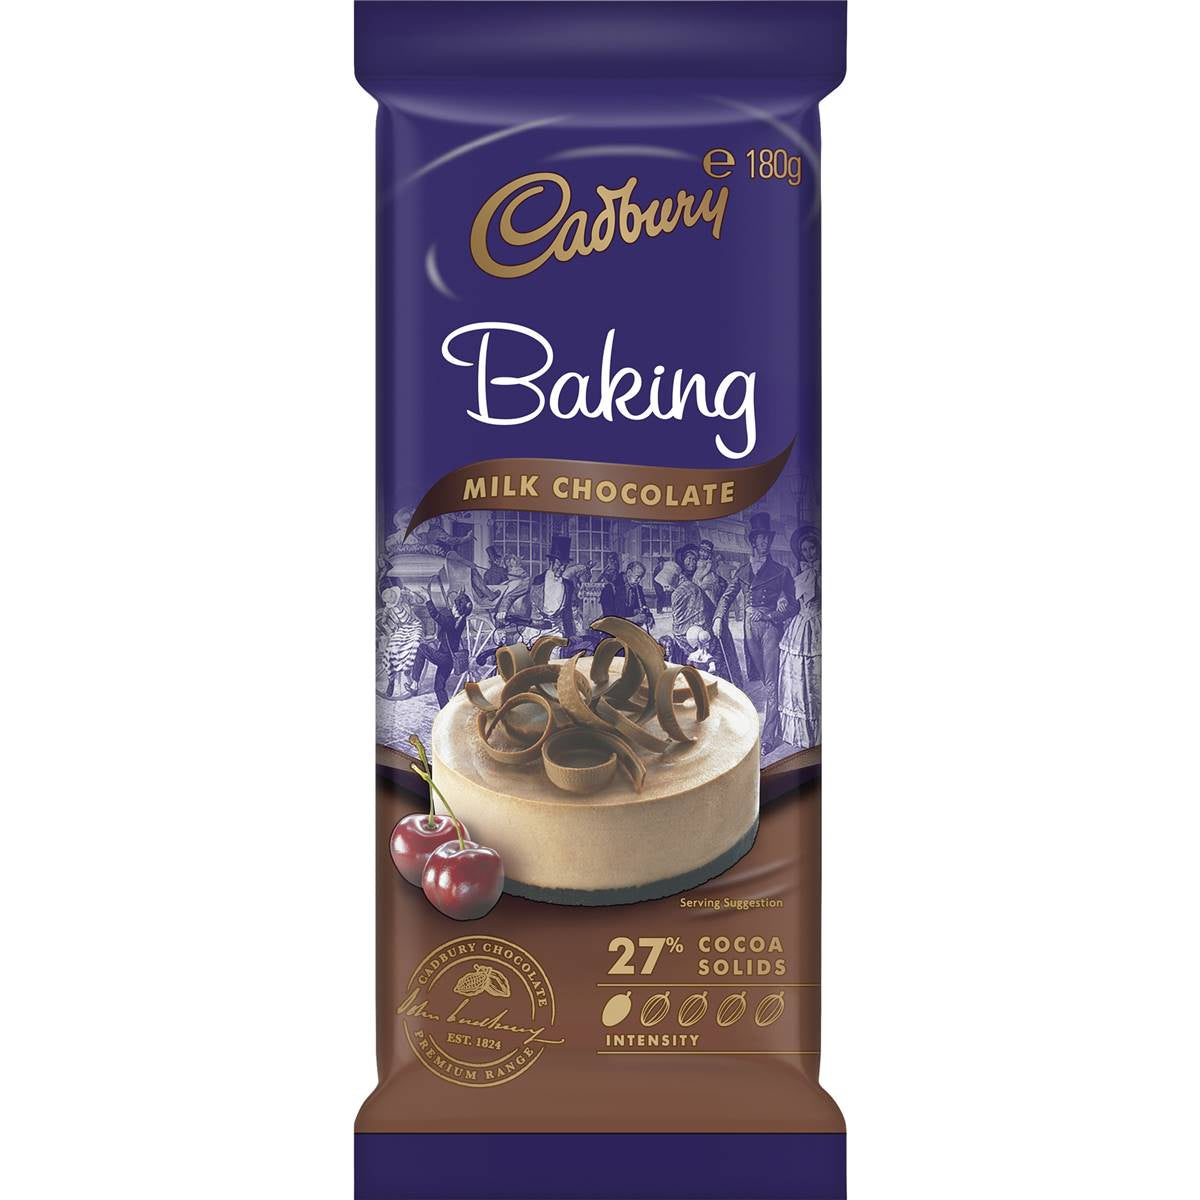 Cadbury Baking Milk Chocolate 180g